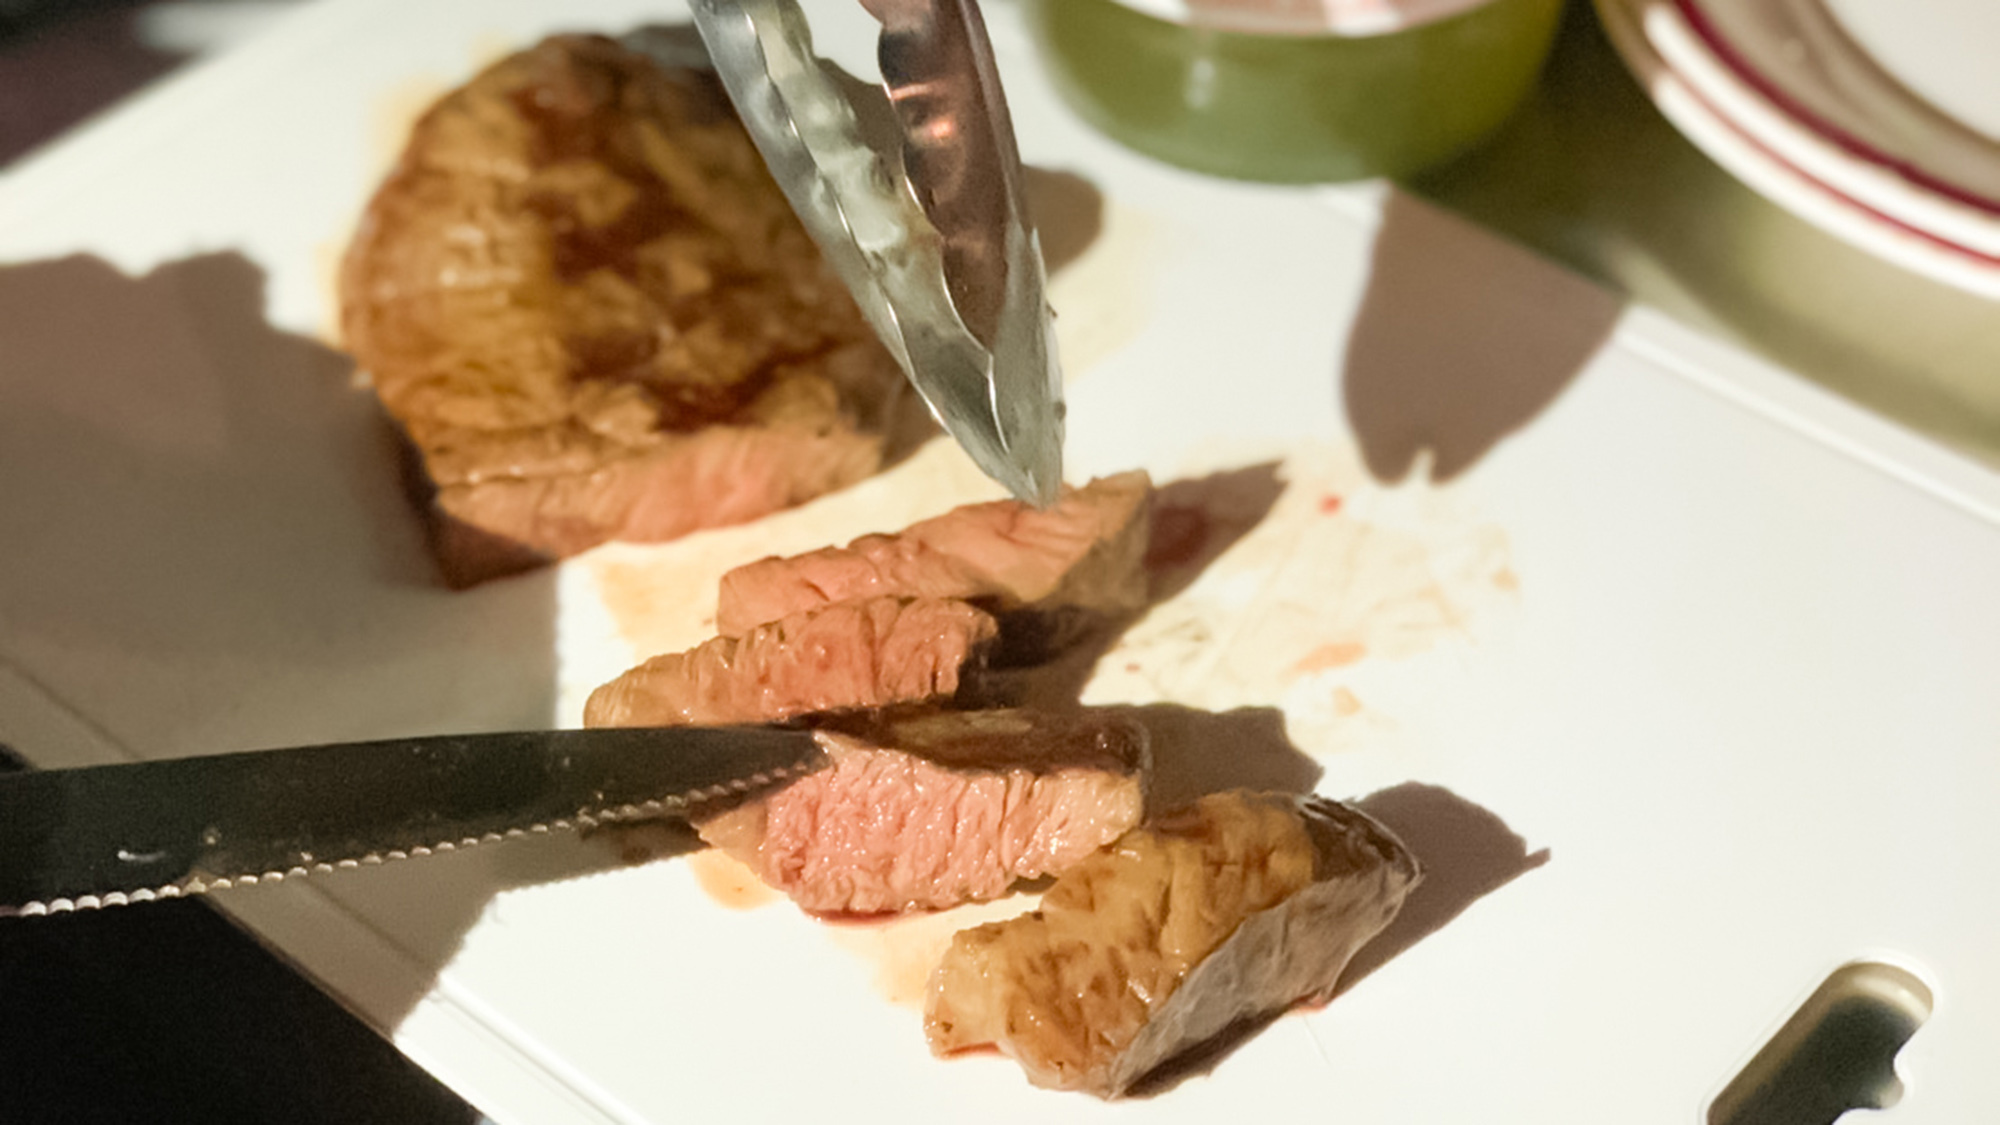 ・【BBQ】焼き立てアツアツのお肉をカット。肉汁があふれてきます